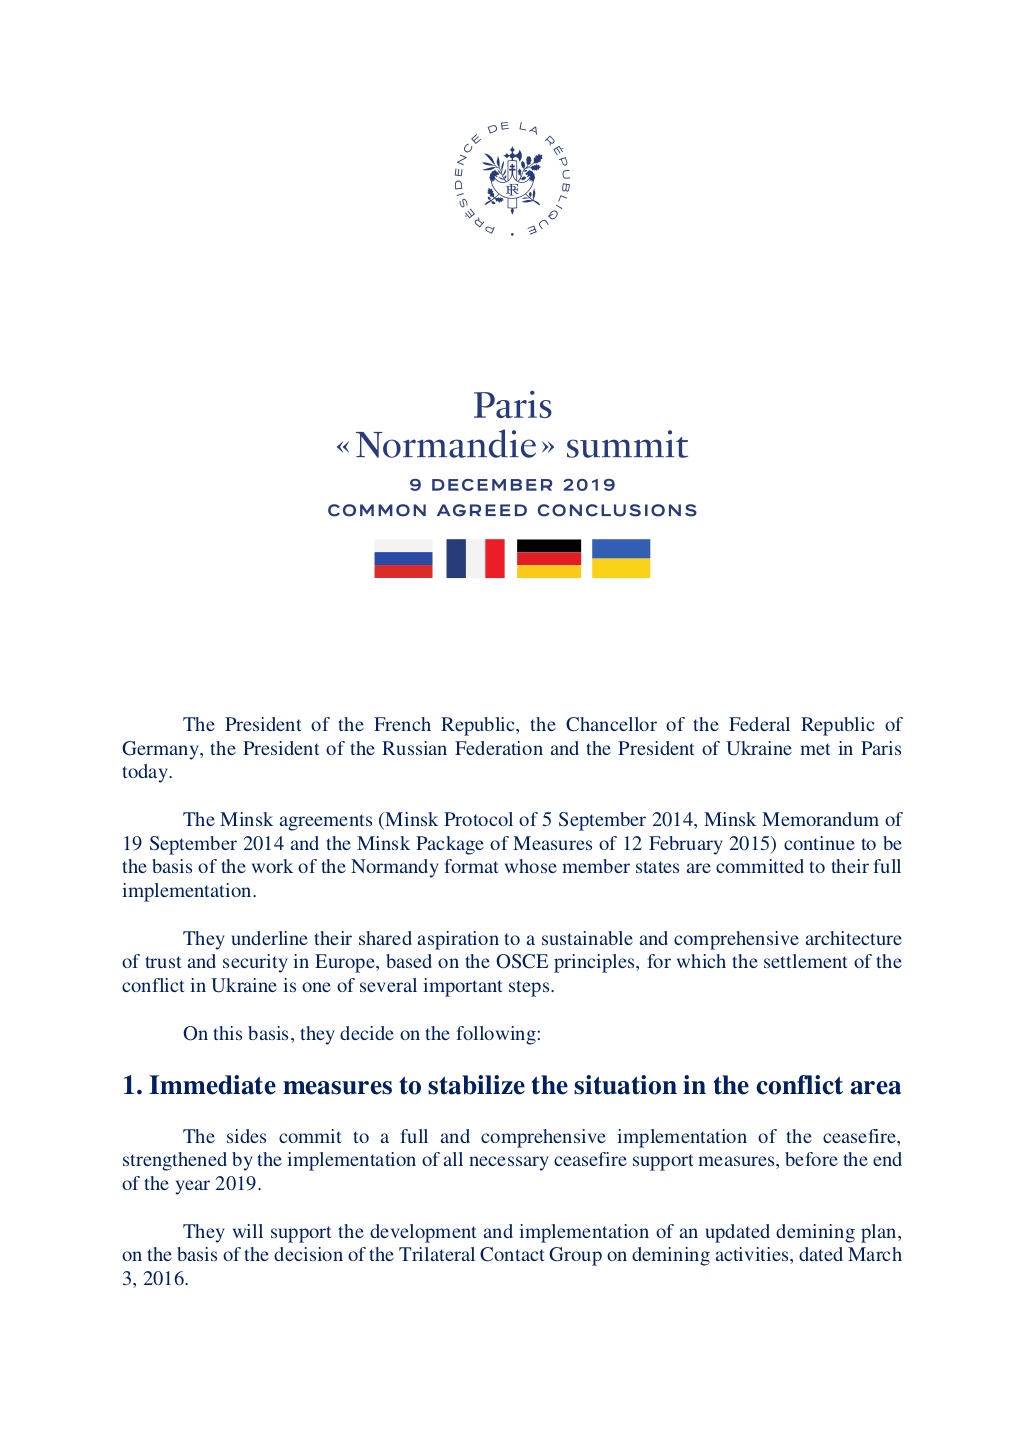 Текст документа нормандской встречи